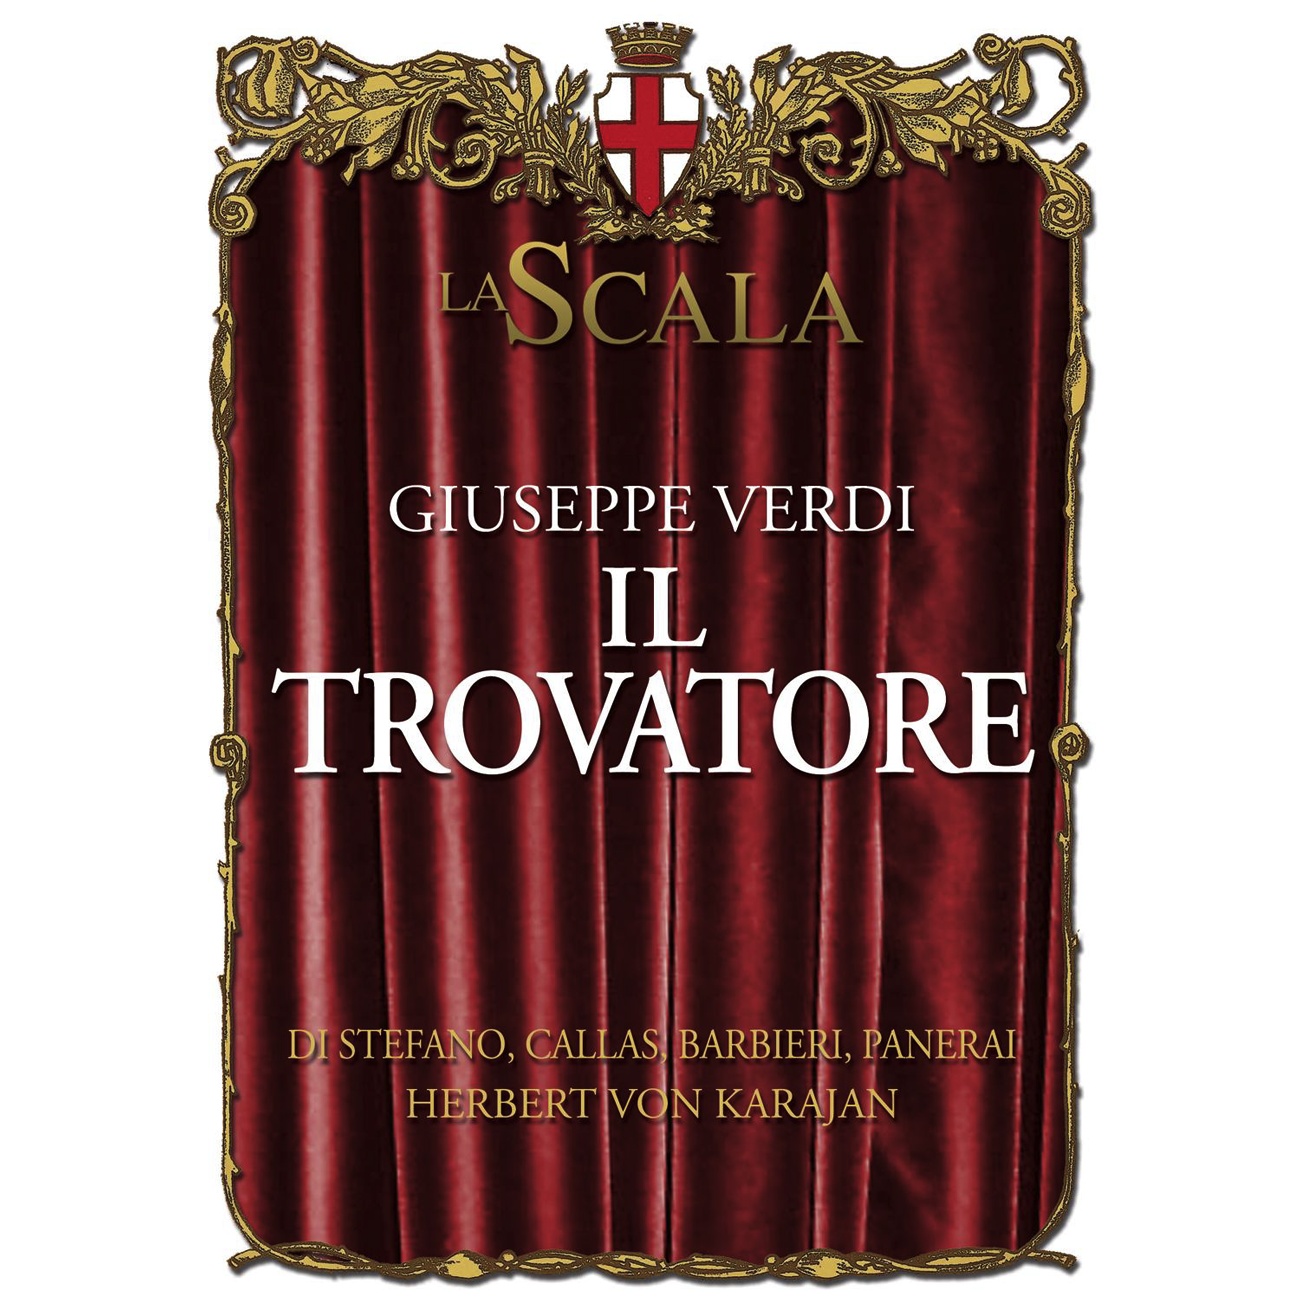 Il Trovatore (1997 Digital Remaster), ACT 1 Scene One: All'erta!  All'erta!